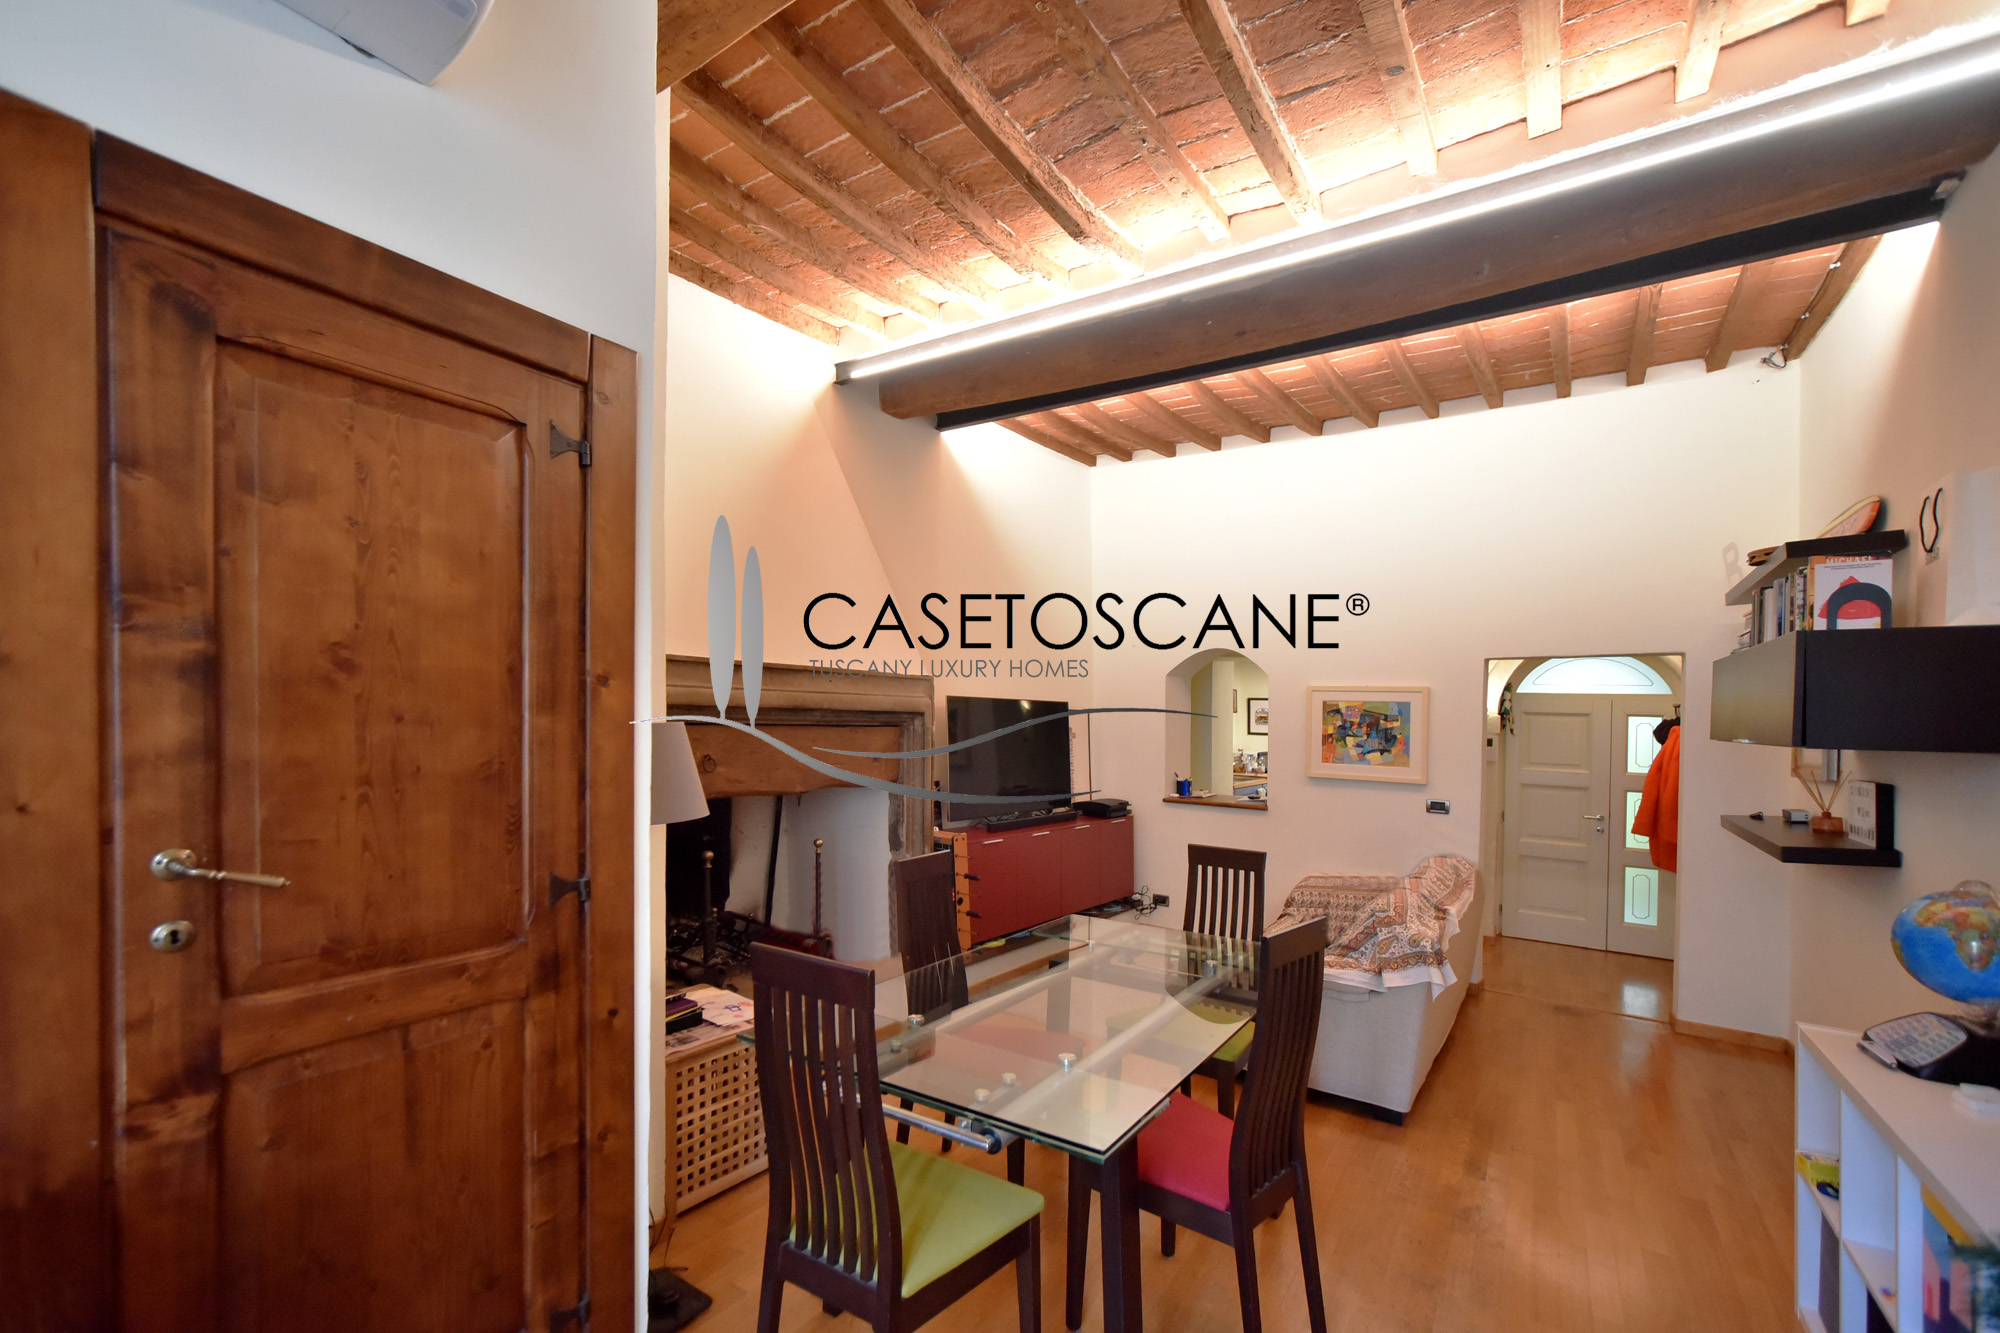 A768 - Caratteristico appartamento di 2,5 vani al primo piano, ristrutturato, in piccola palazzina nel centro storico di Arezzo.